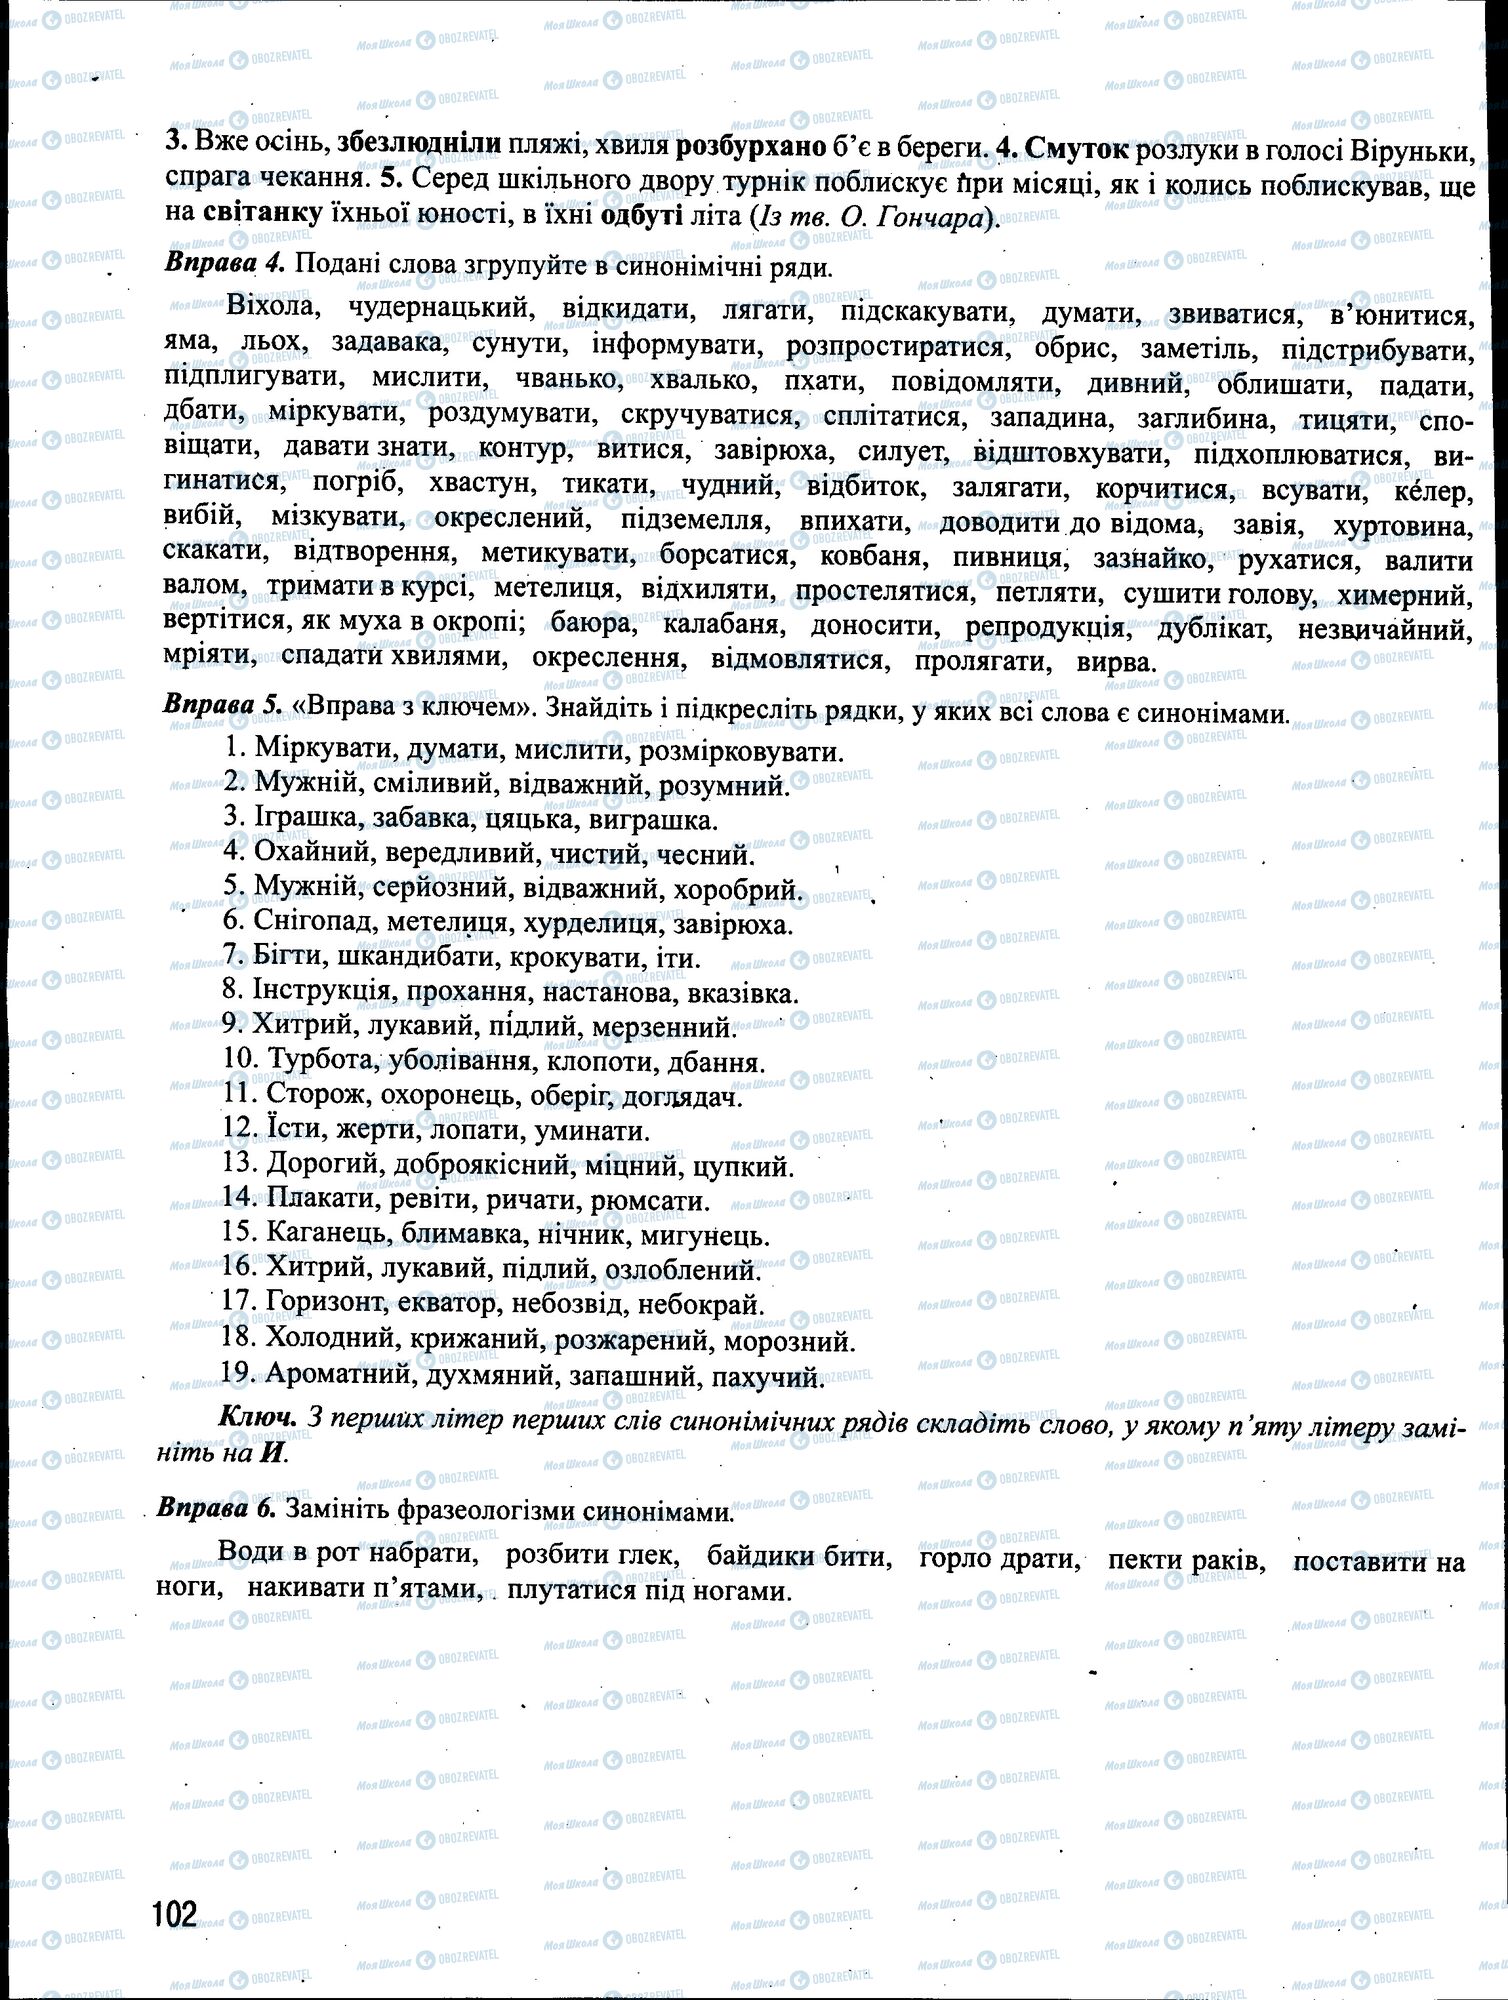 ЗНО Укр мова 11 класс страница 102